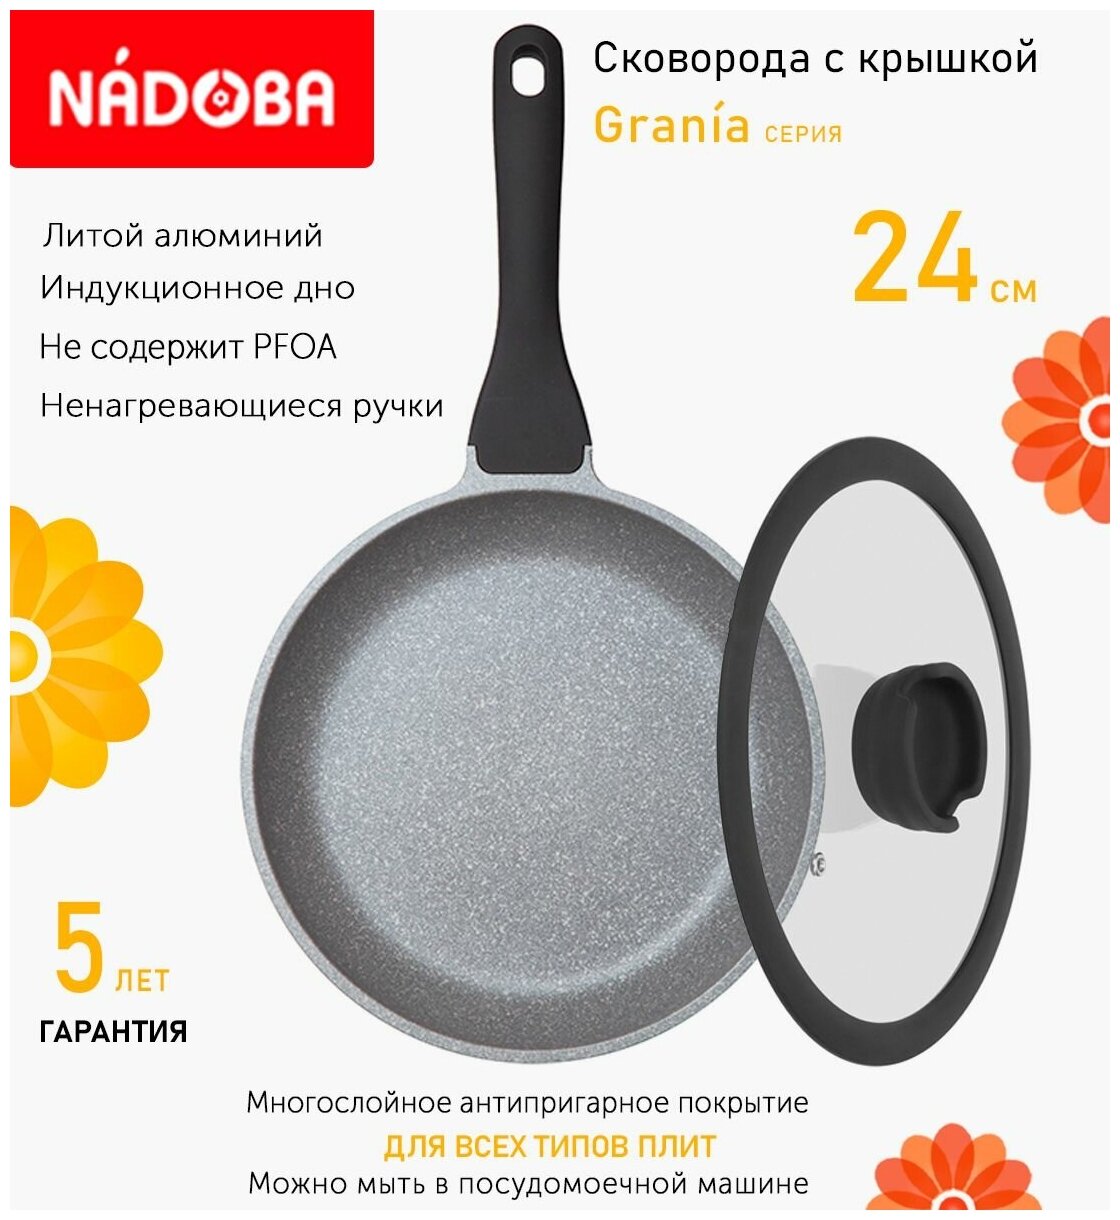 Сковорода с крышкой NADOBA 24см, серия "Grania" (арт. 728118/751013)